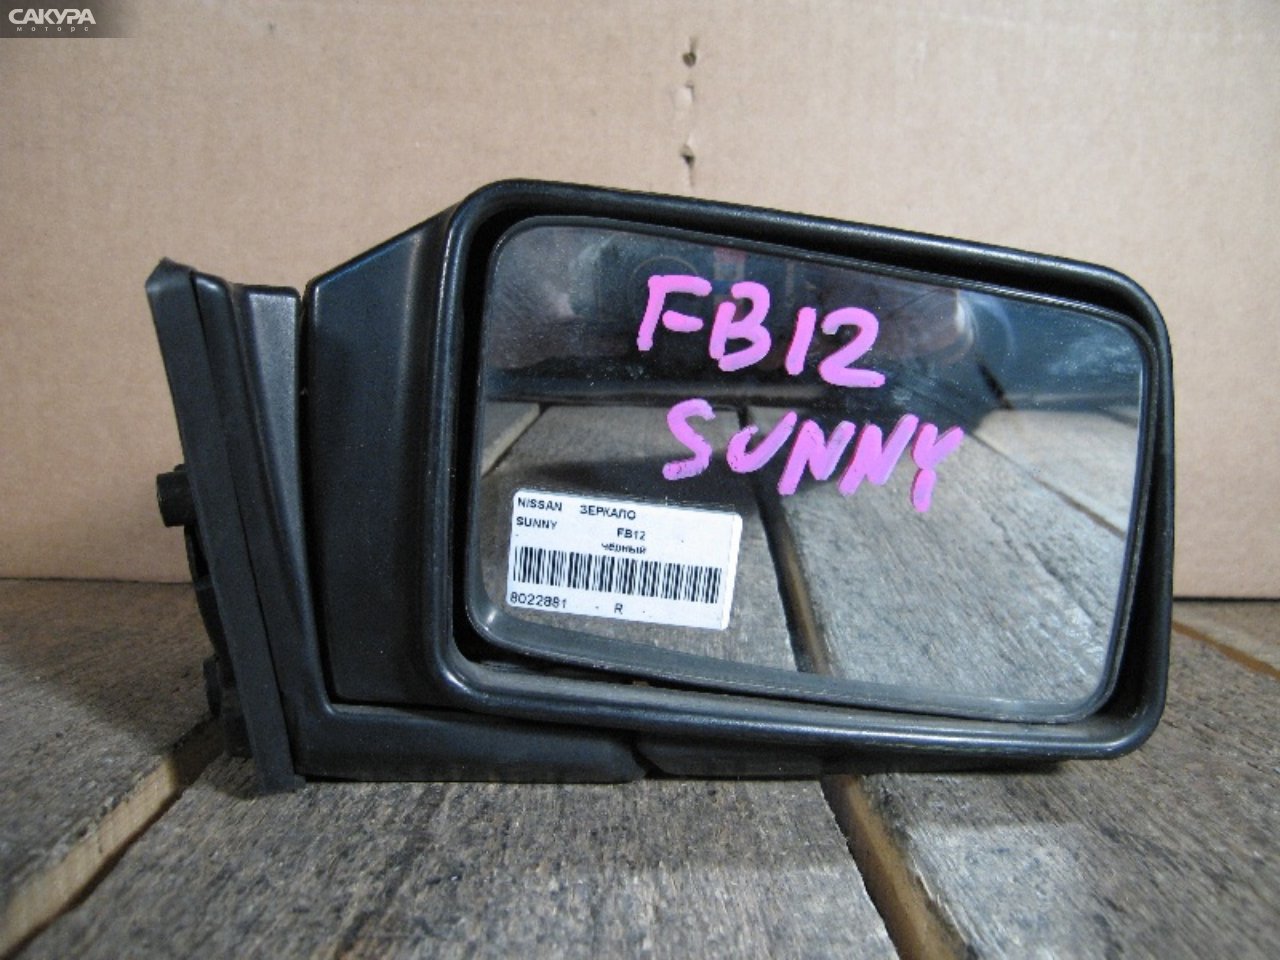 Зеркало боковое правое Nissan Sunny FB12: купить в Сакура Абакан.